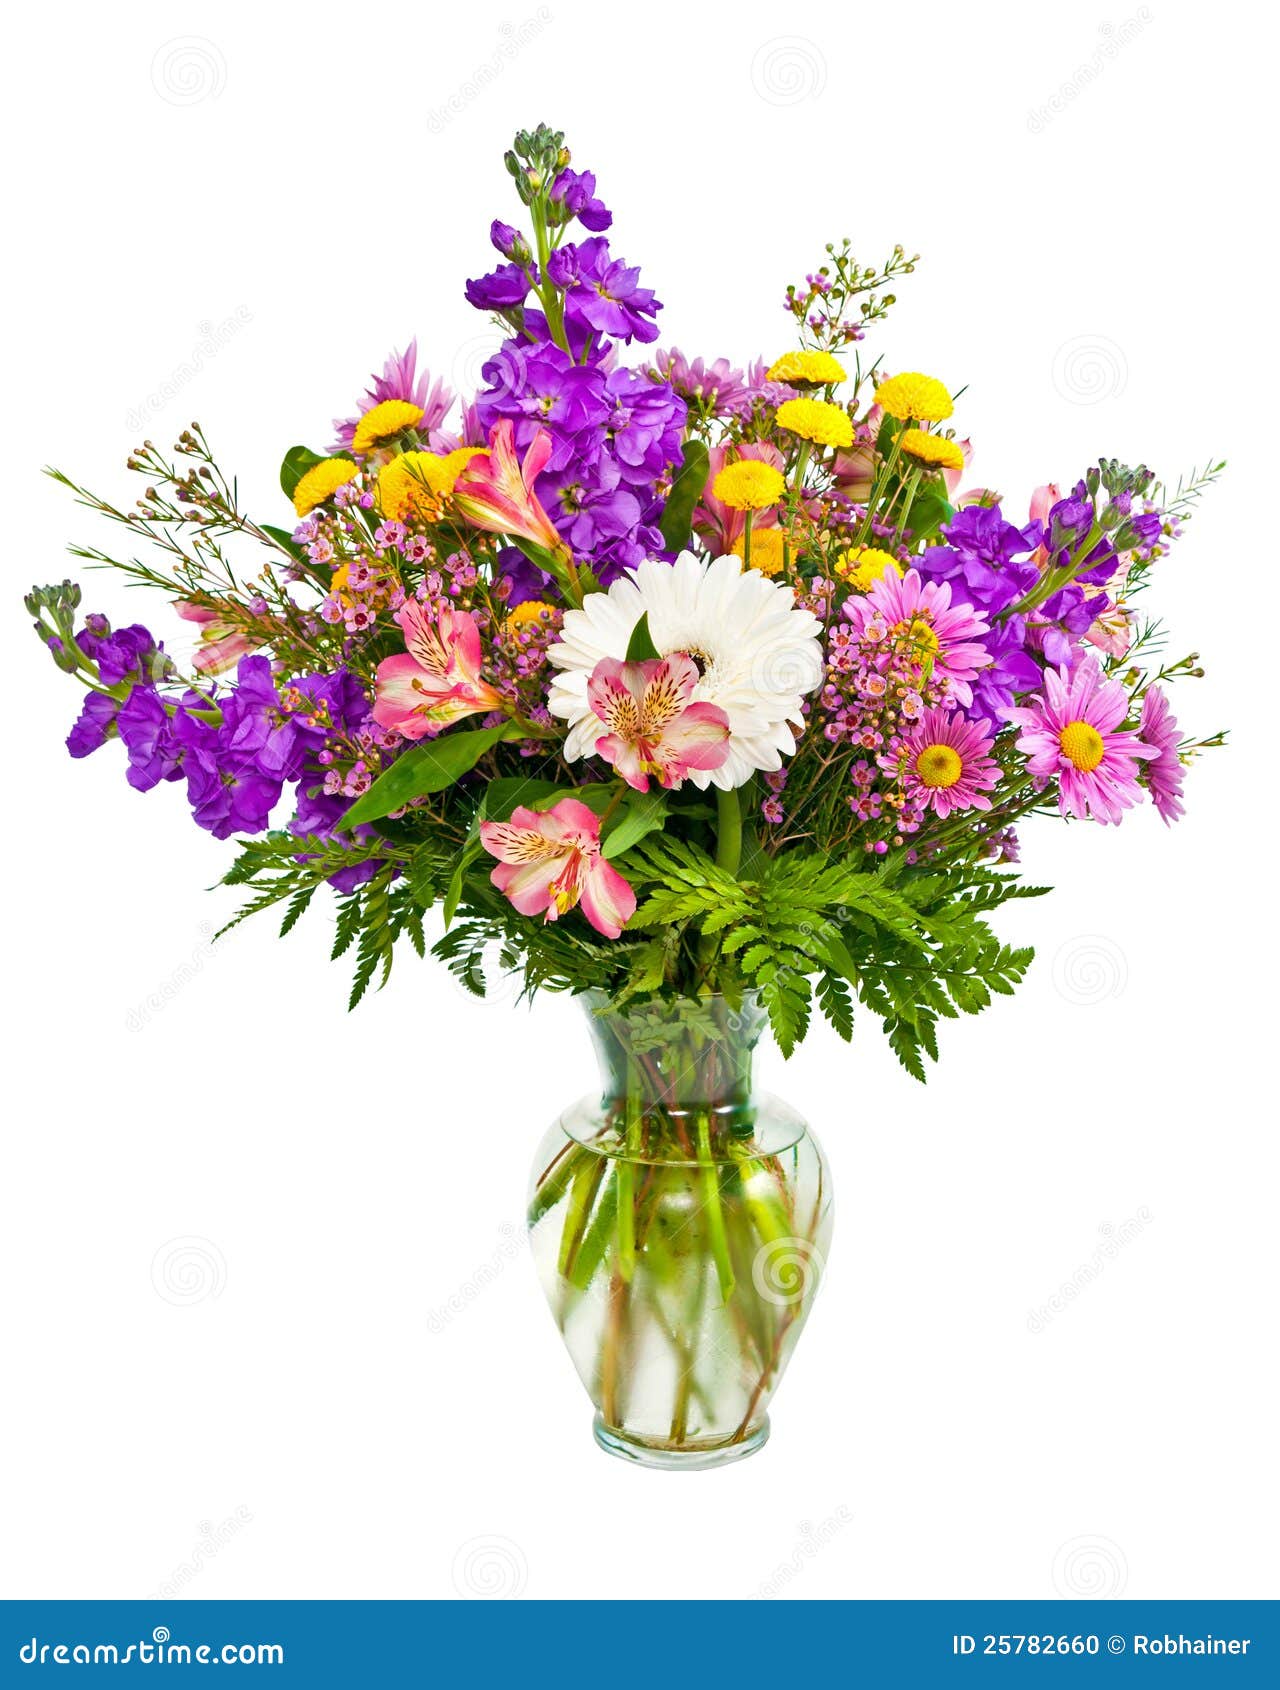 colorful flower bouquet arrangement in vase